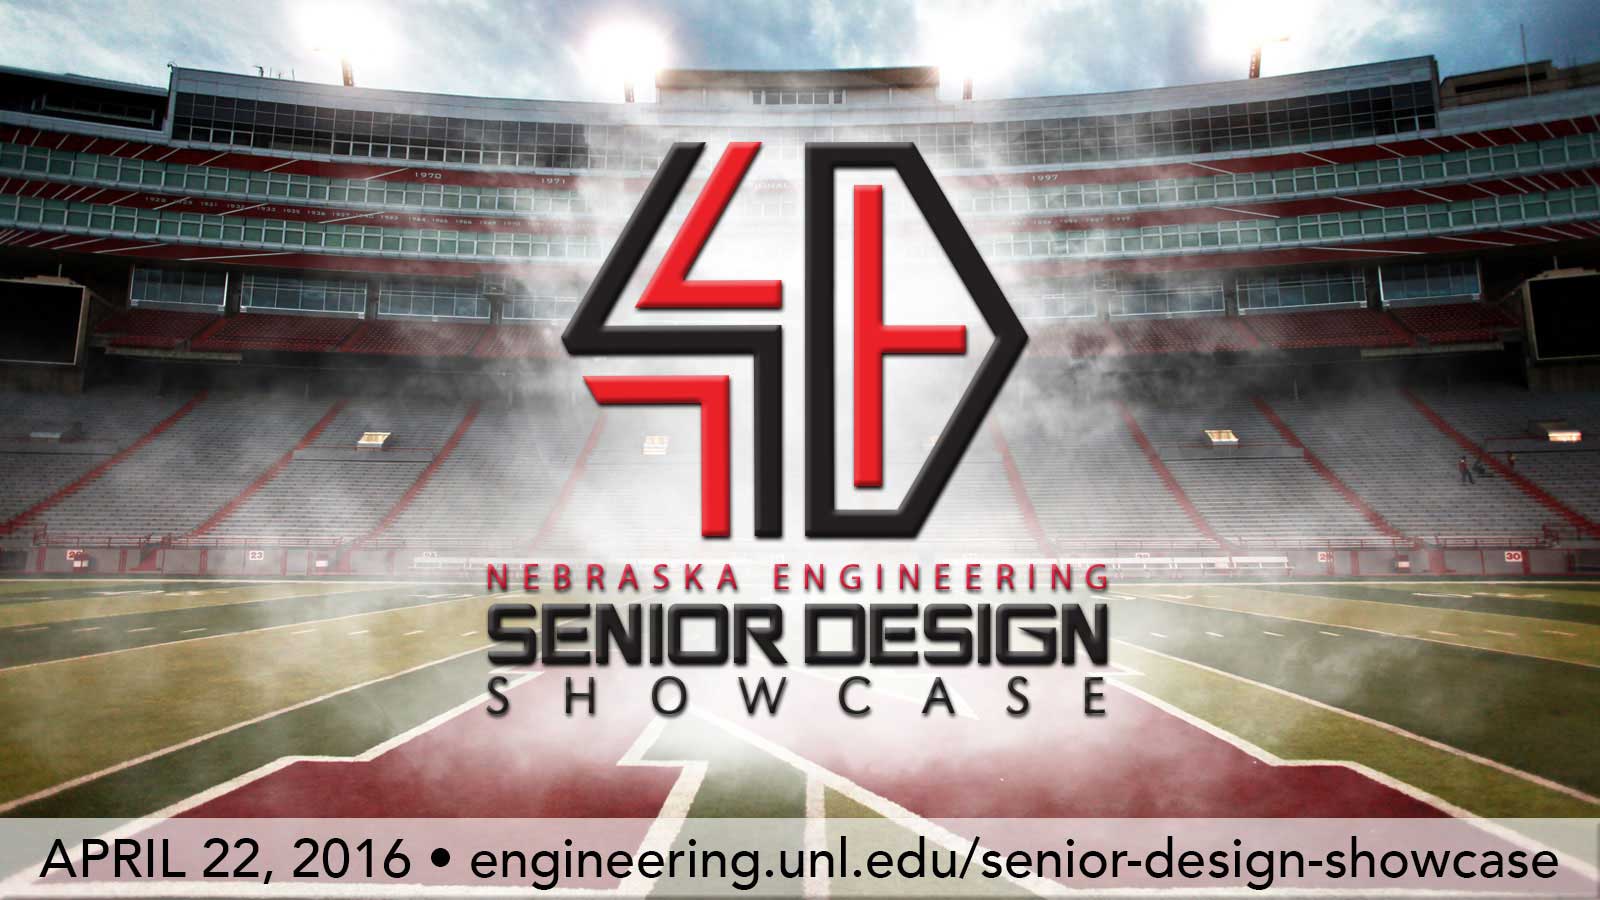 Senior Design Showcase is Friday at Memorial Stadium.